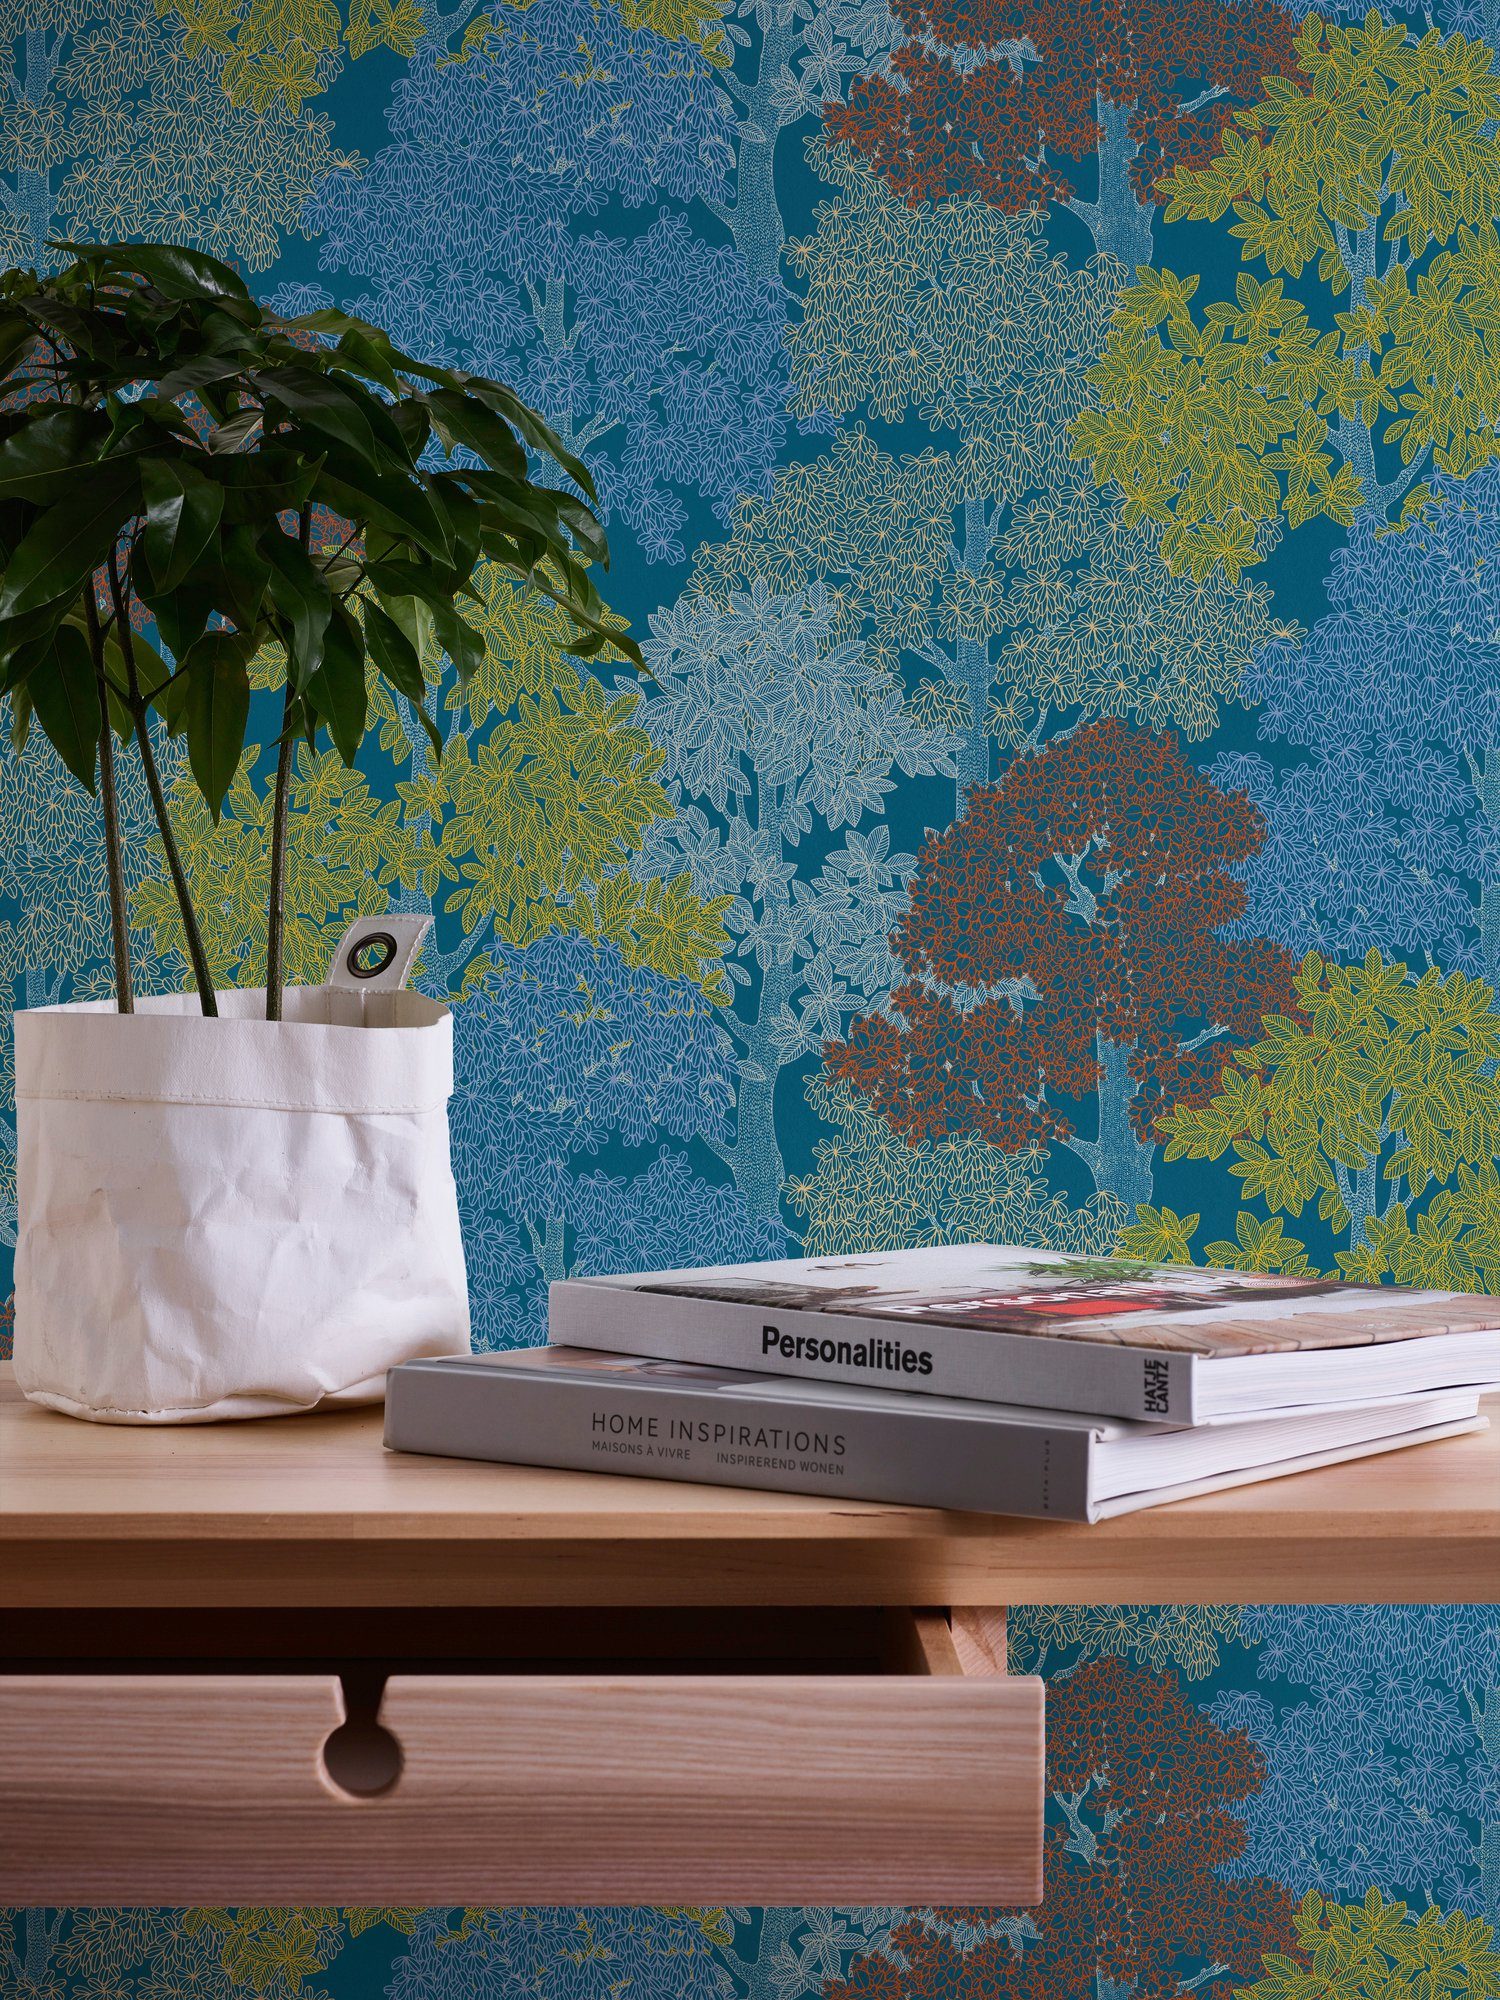 Wald Paper blau/gelb/rot Wald, Architects glatt, Impression, Tapete Blumentapete botanisch, Floral floral, Vliestapete